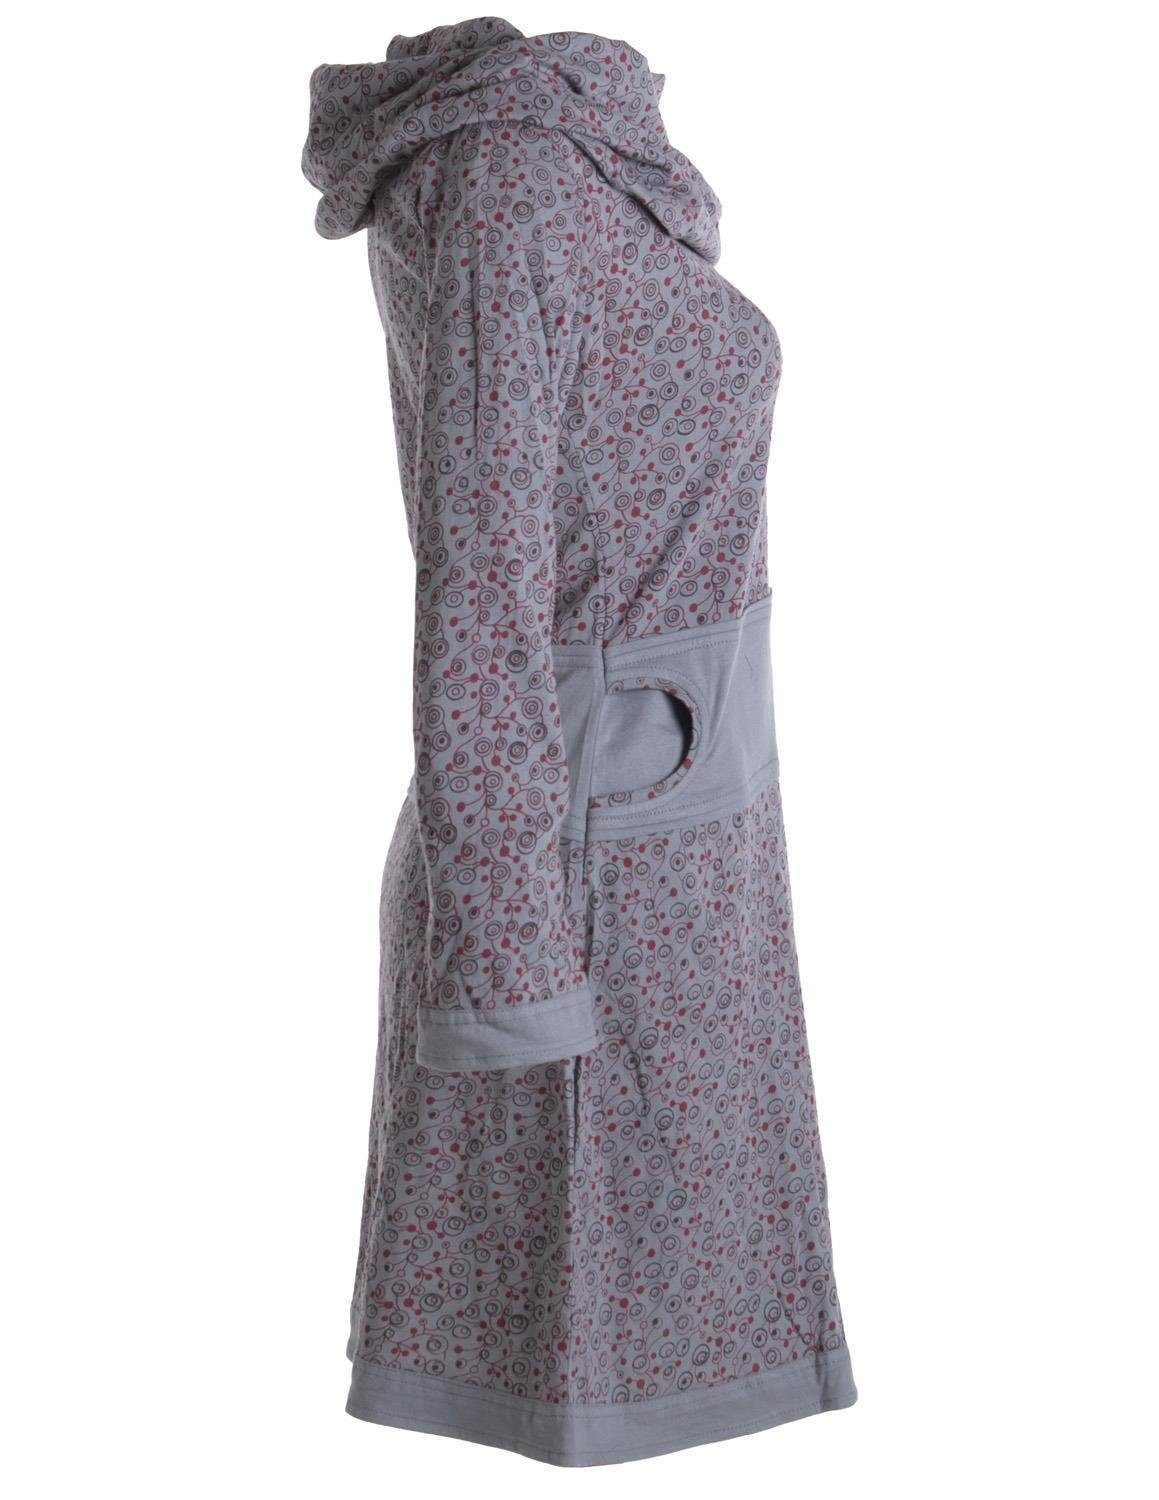 Boho, Kleid aus Ethno, Hippie Bedrucktes Goa, grau Baumwolle Jerseykleid Style Vishes mit Schalkragen